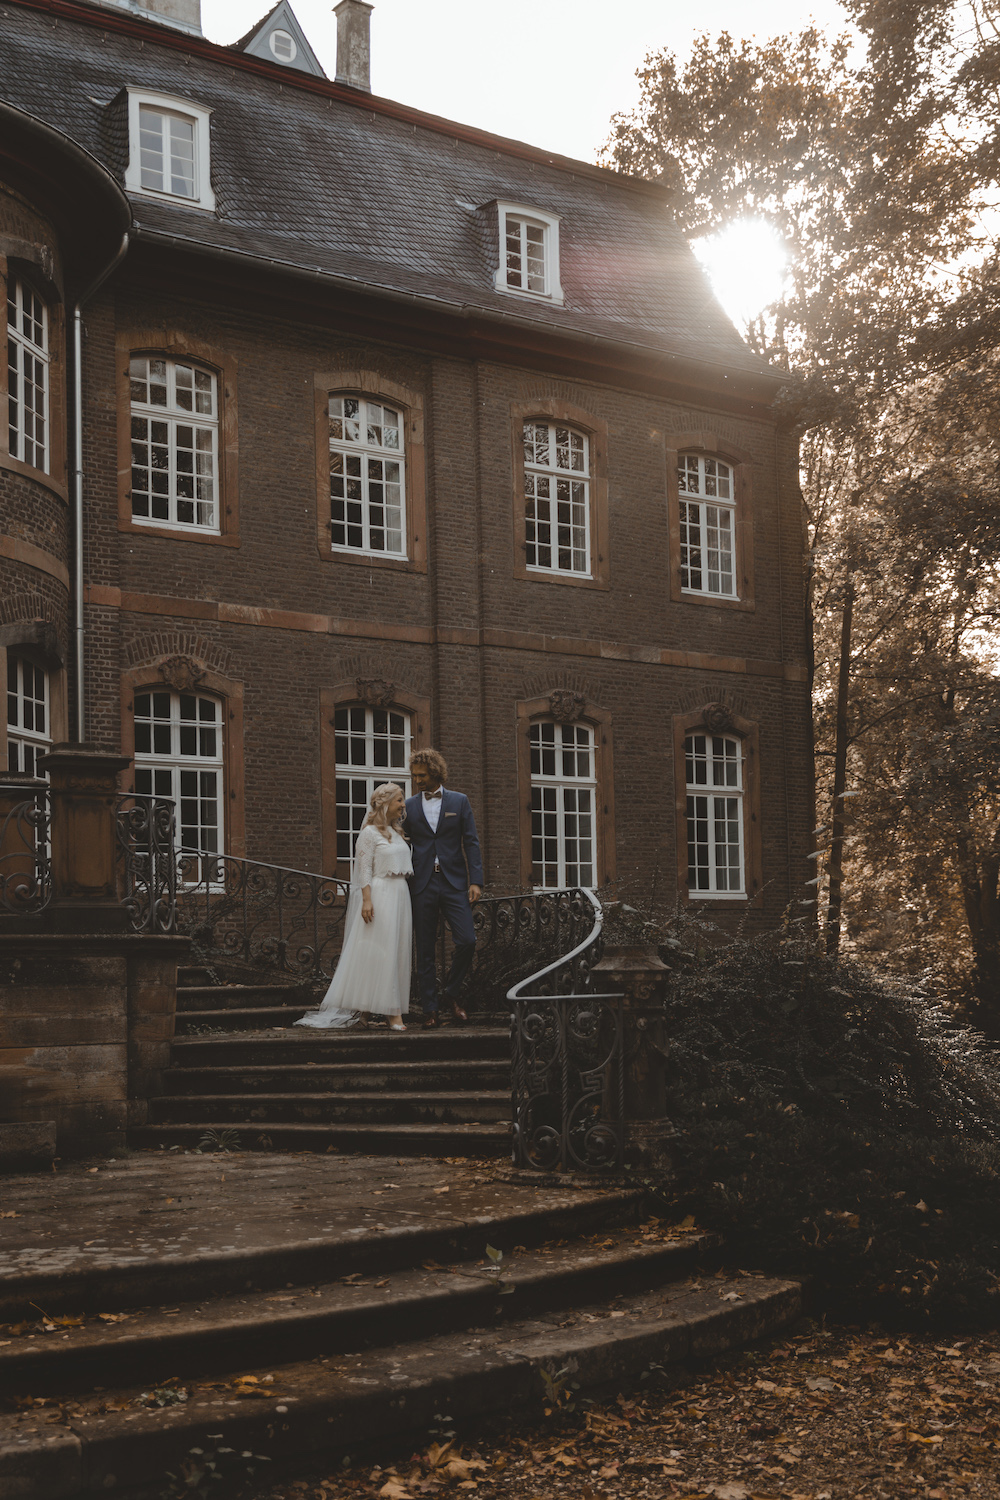 noni Brautmode Herbsthochzeit auf Burg Eltz von Influencerin beautelicieuse, Brautkleid mit Pullover, Spitzentop und Tüllrock